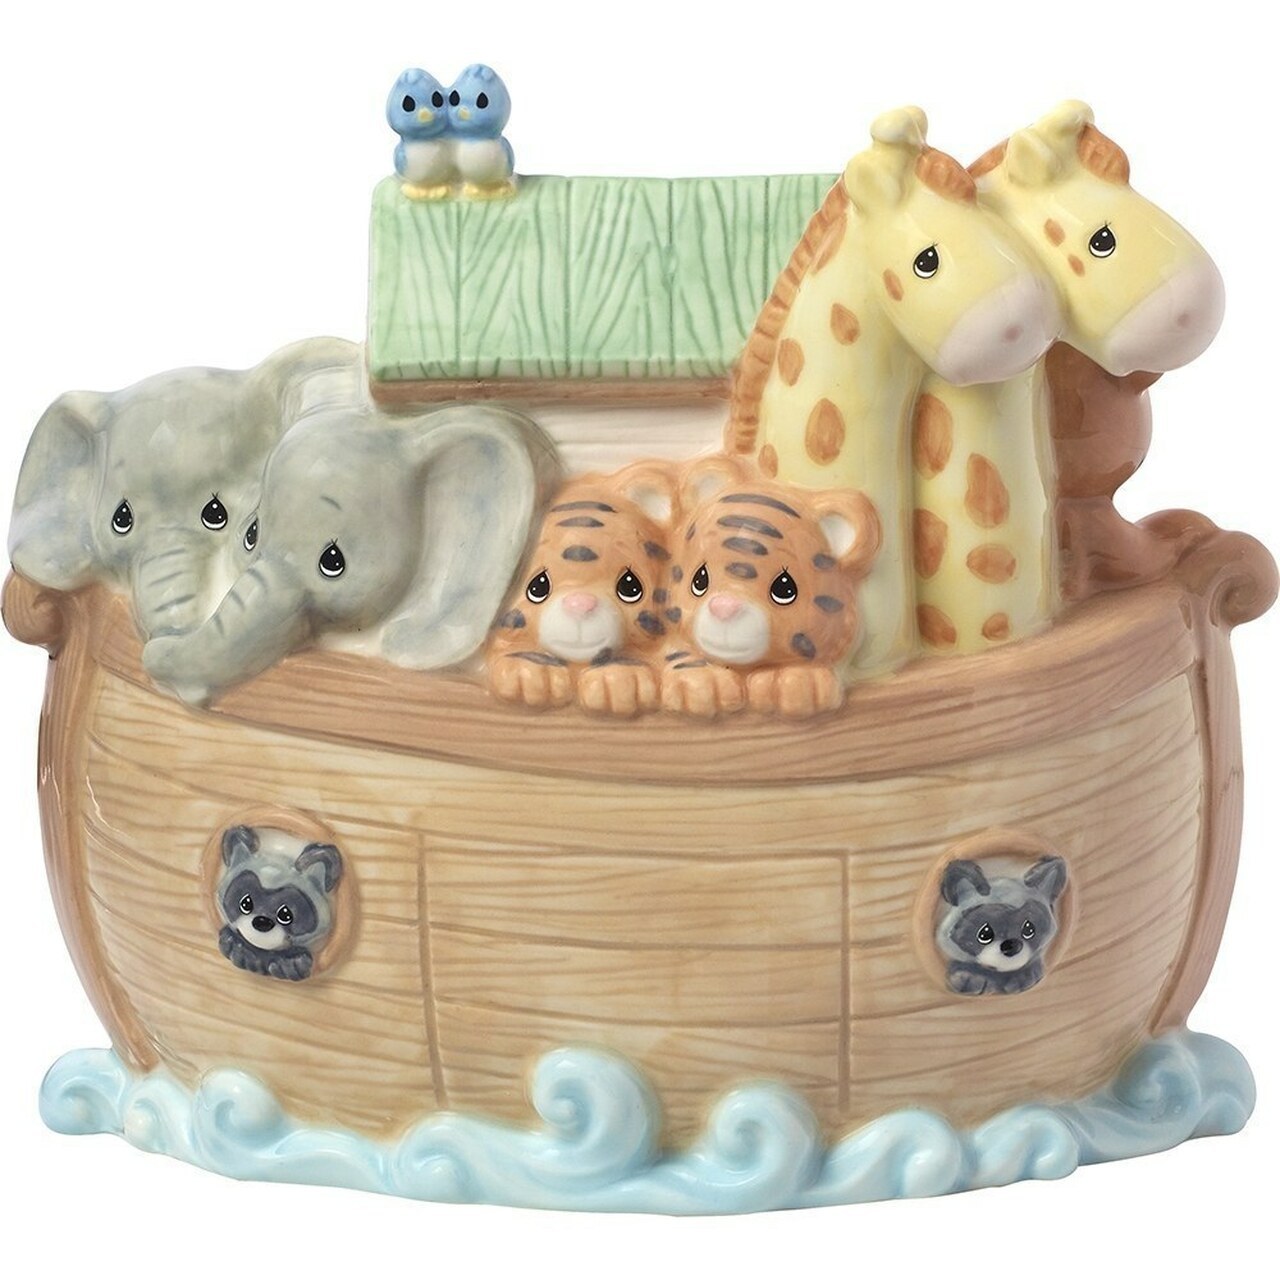 Precious Moments Noah's Ark Porcelain Bank - $40.99